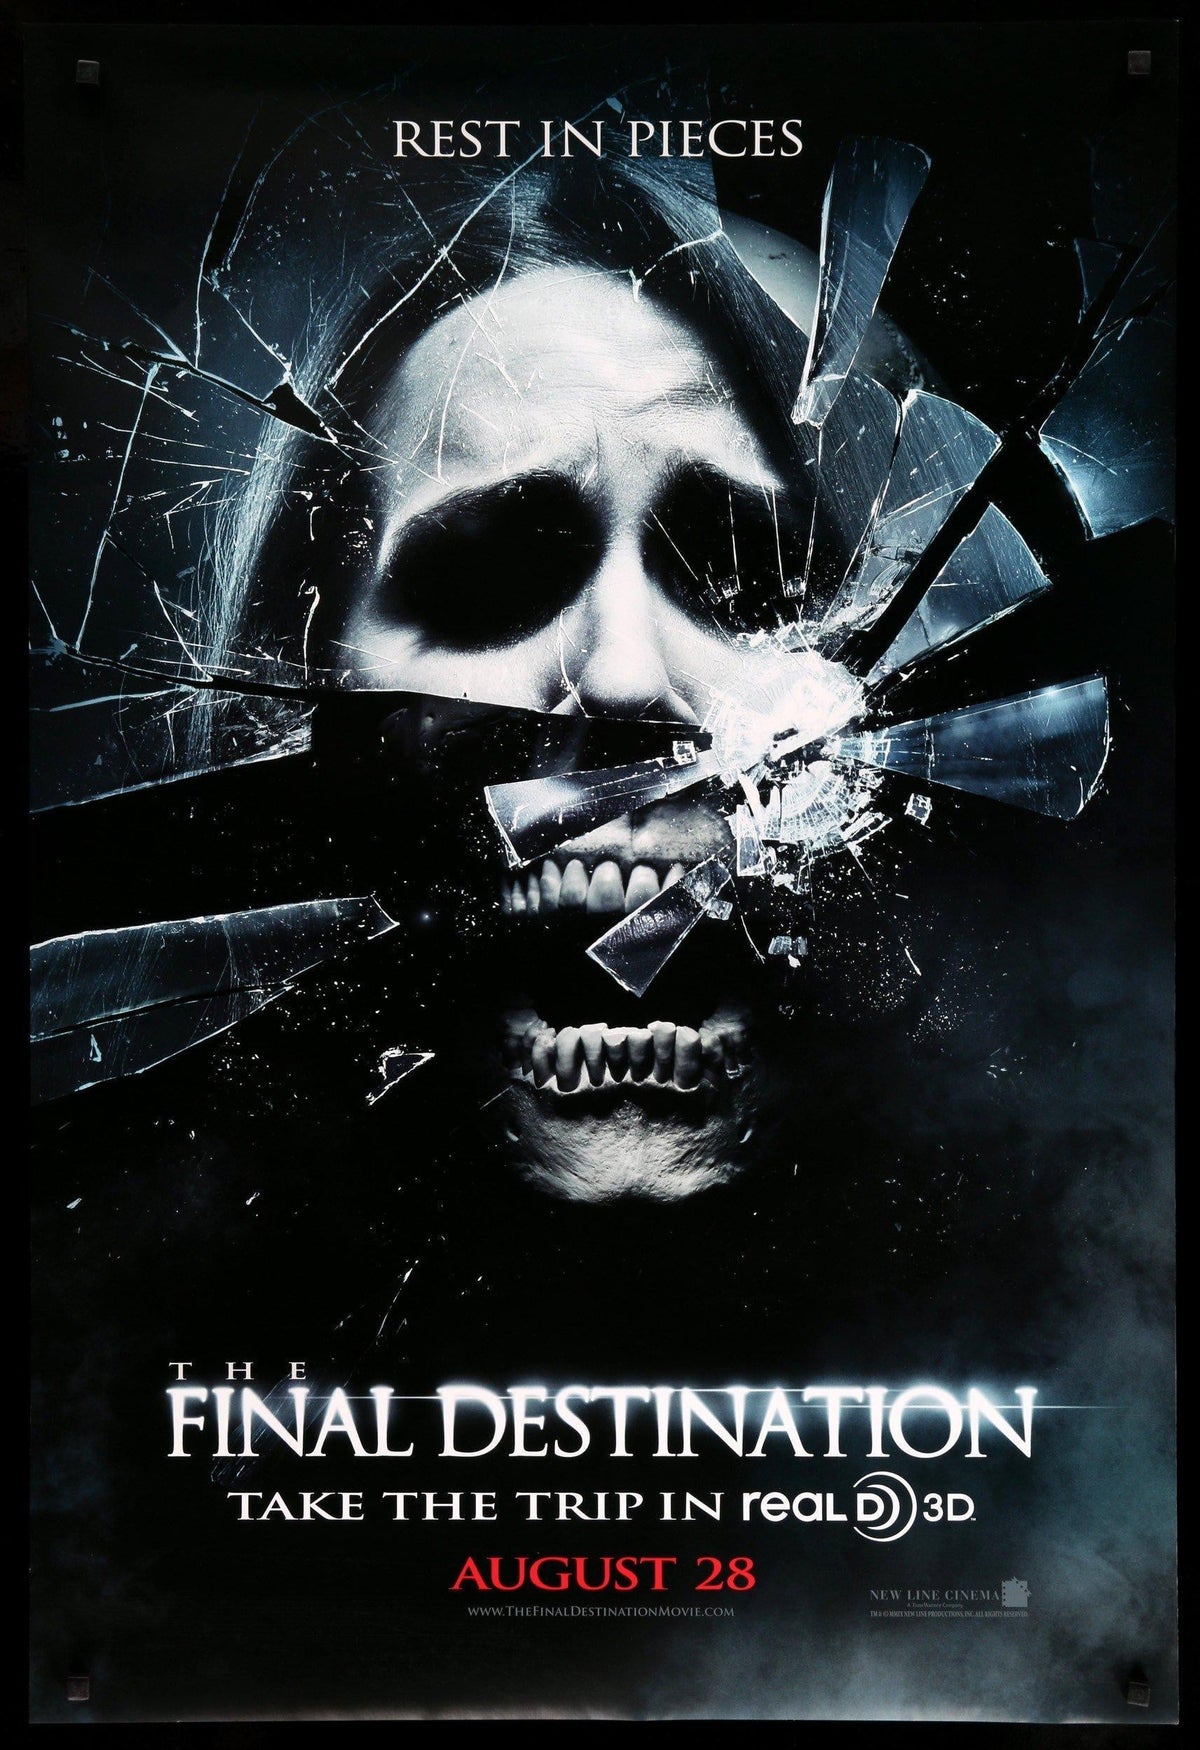 Final Destination (2009) original movie poster for sale at Original Film Art